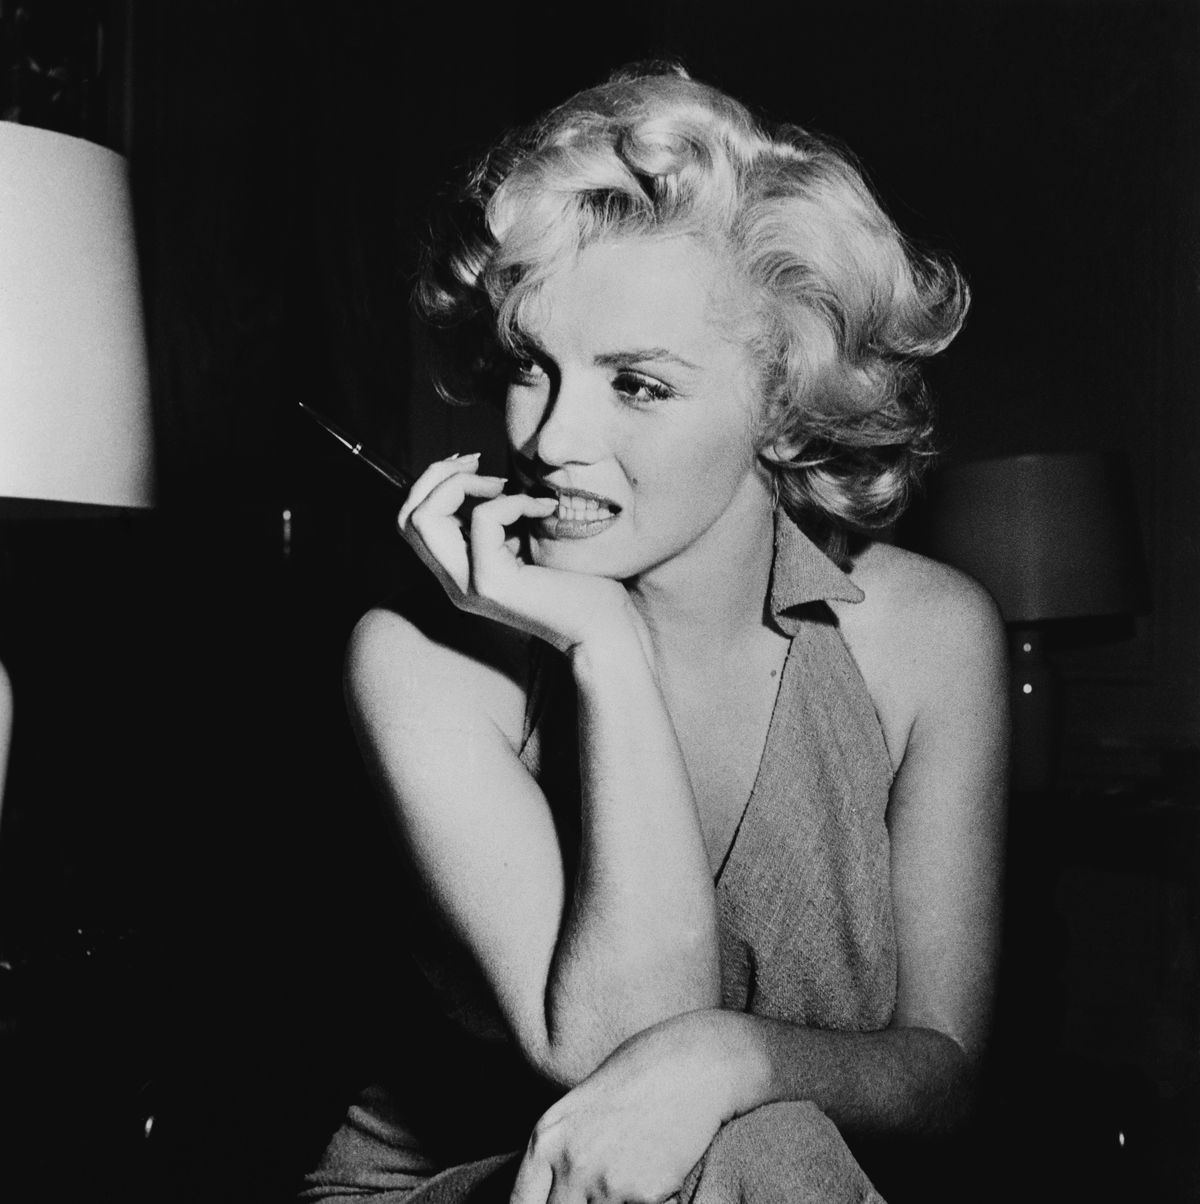 Marilyn Monroe Porn Video - The explosive real story behind Marilyn Monroe film Blonde